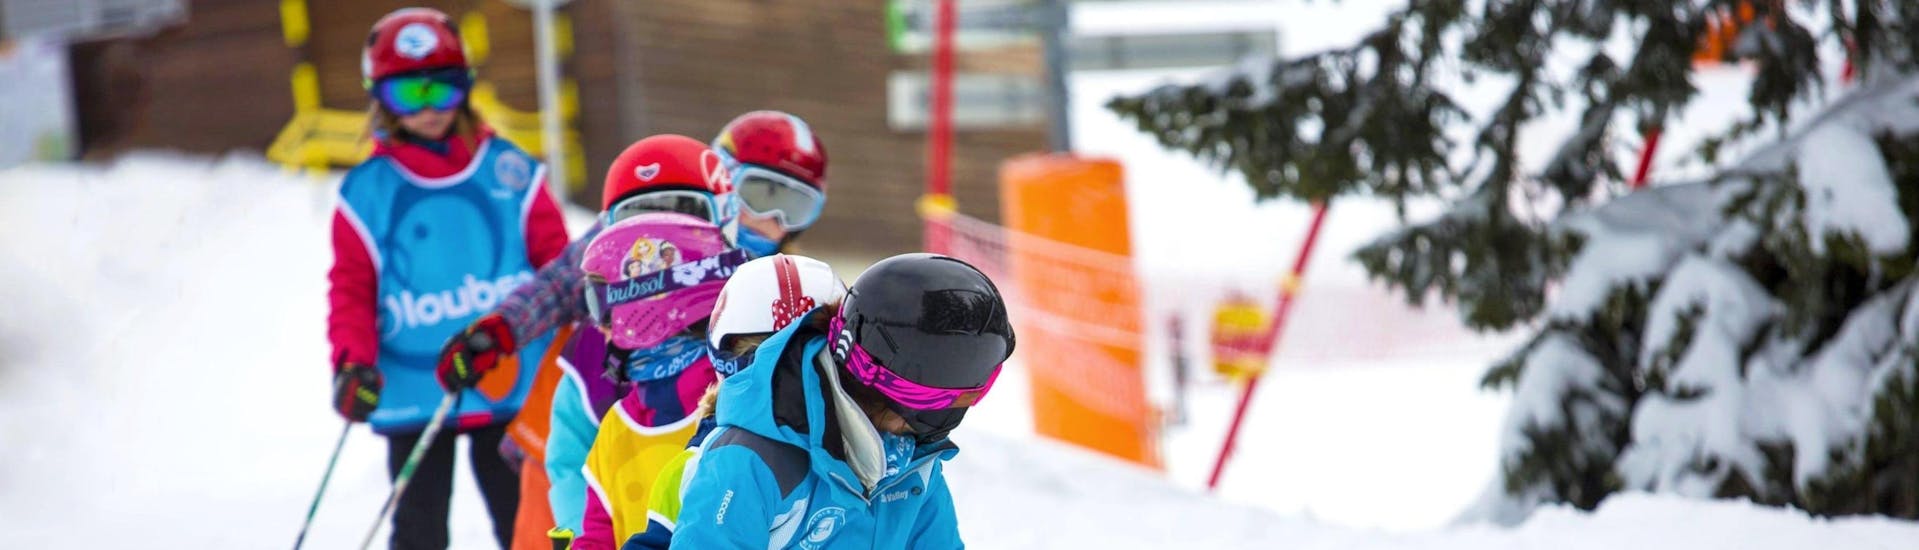 Cours de ski Enfants (6-13 ans) pour Skieurs expérimentés.